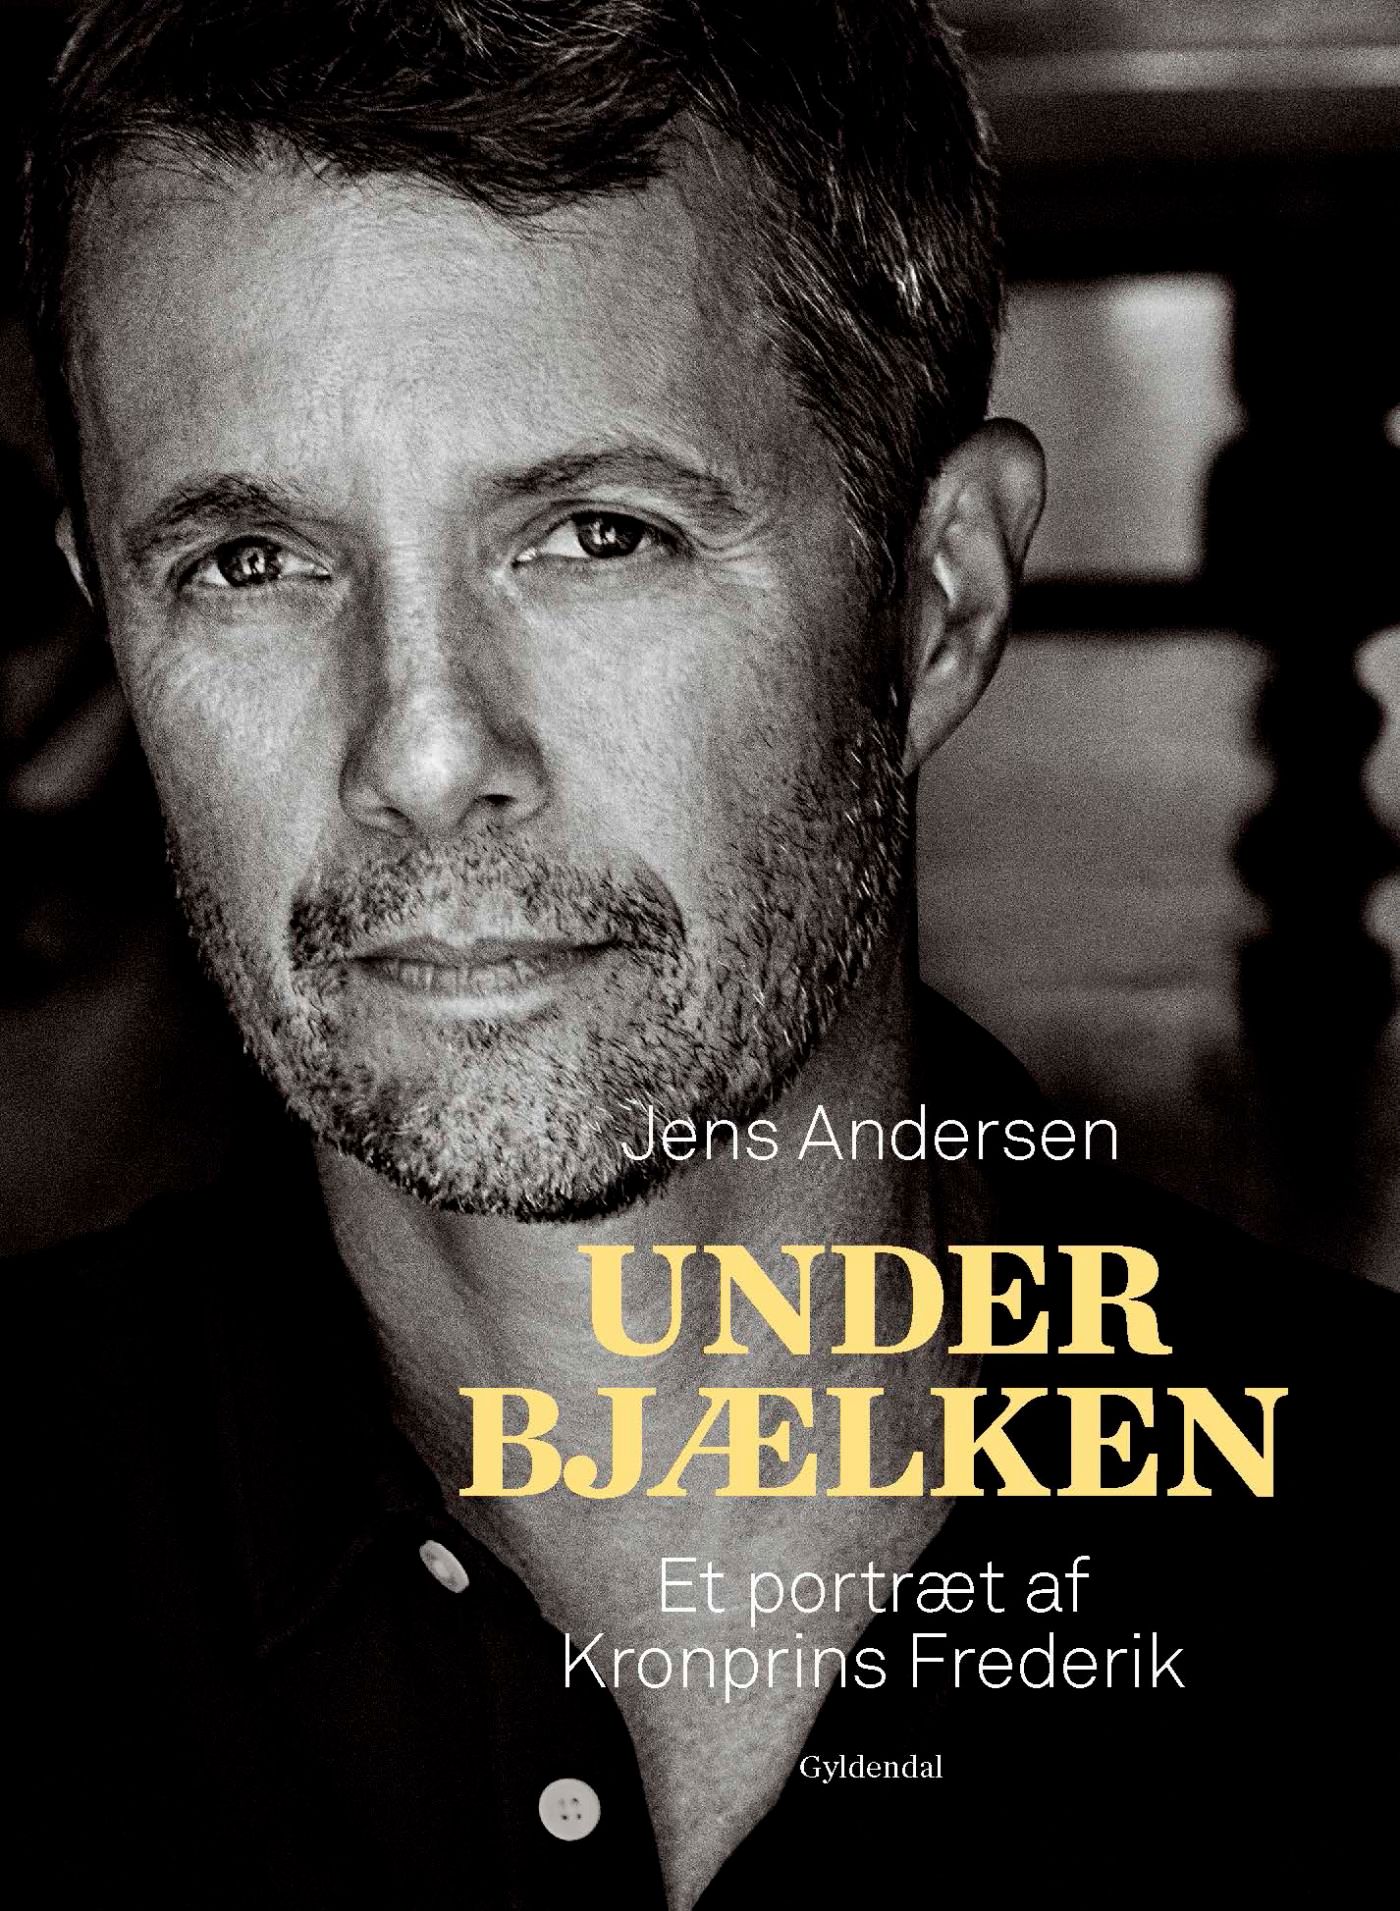 Under bjælken, e-bog af Jens Andersen